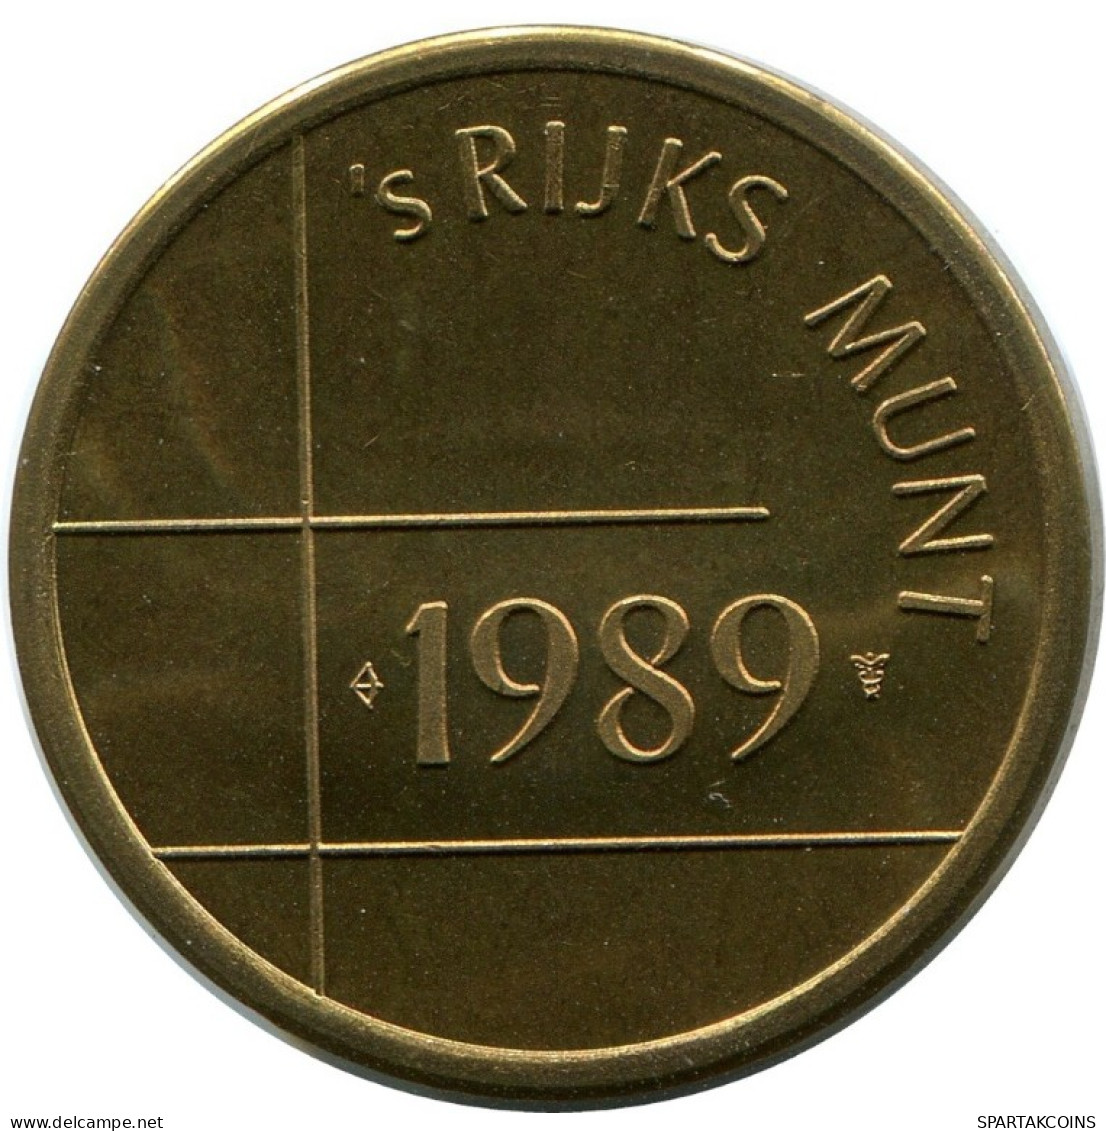 1989 ROYAL DUTCH MINT SET TOKEN NÉERLANDAIS NETHERLANDS MINT (From BU Mint Set) #AH028.F.A - Jahressets & Polierte Platten